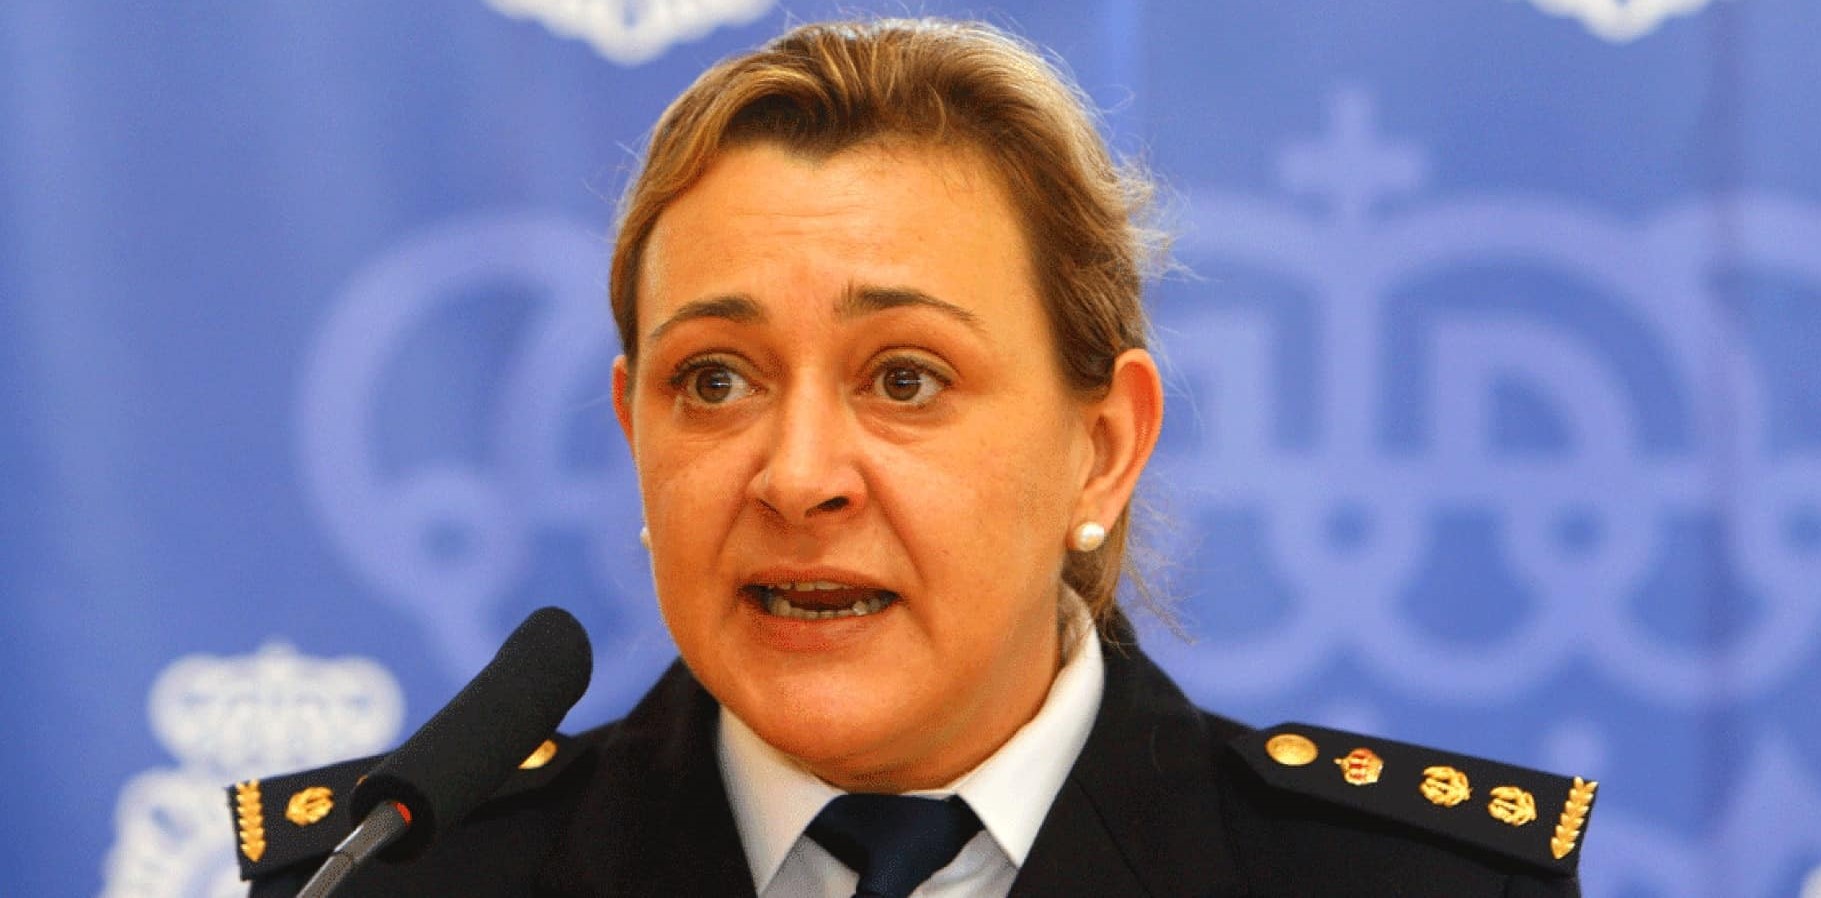 La comisaria de policía Estíbaliz Palma, en una comparecencia informativa.